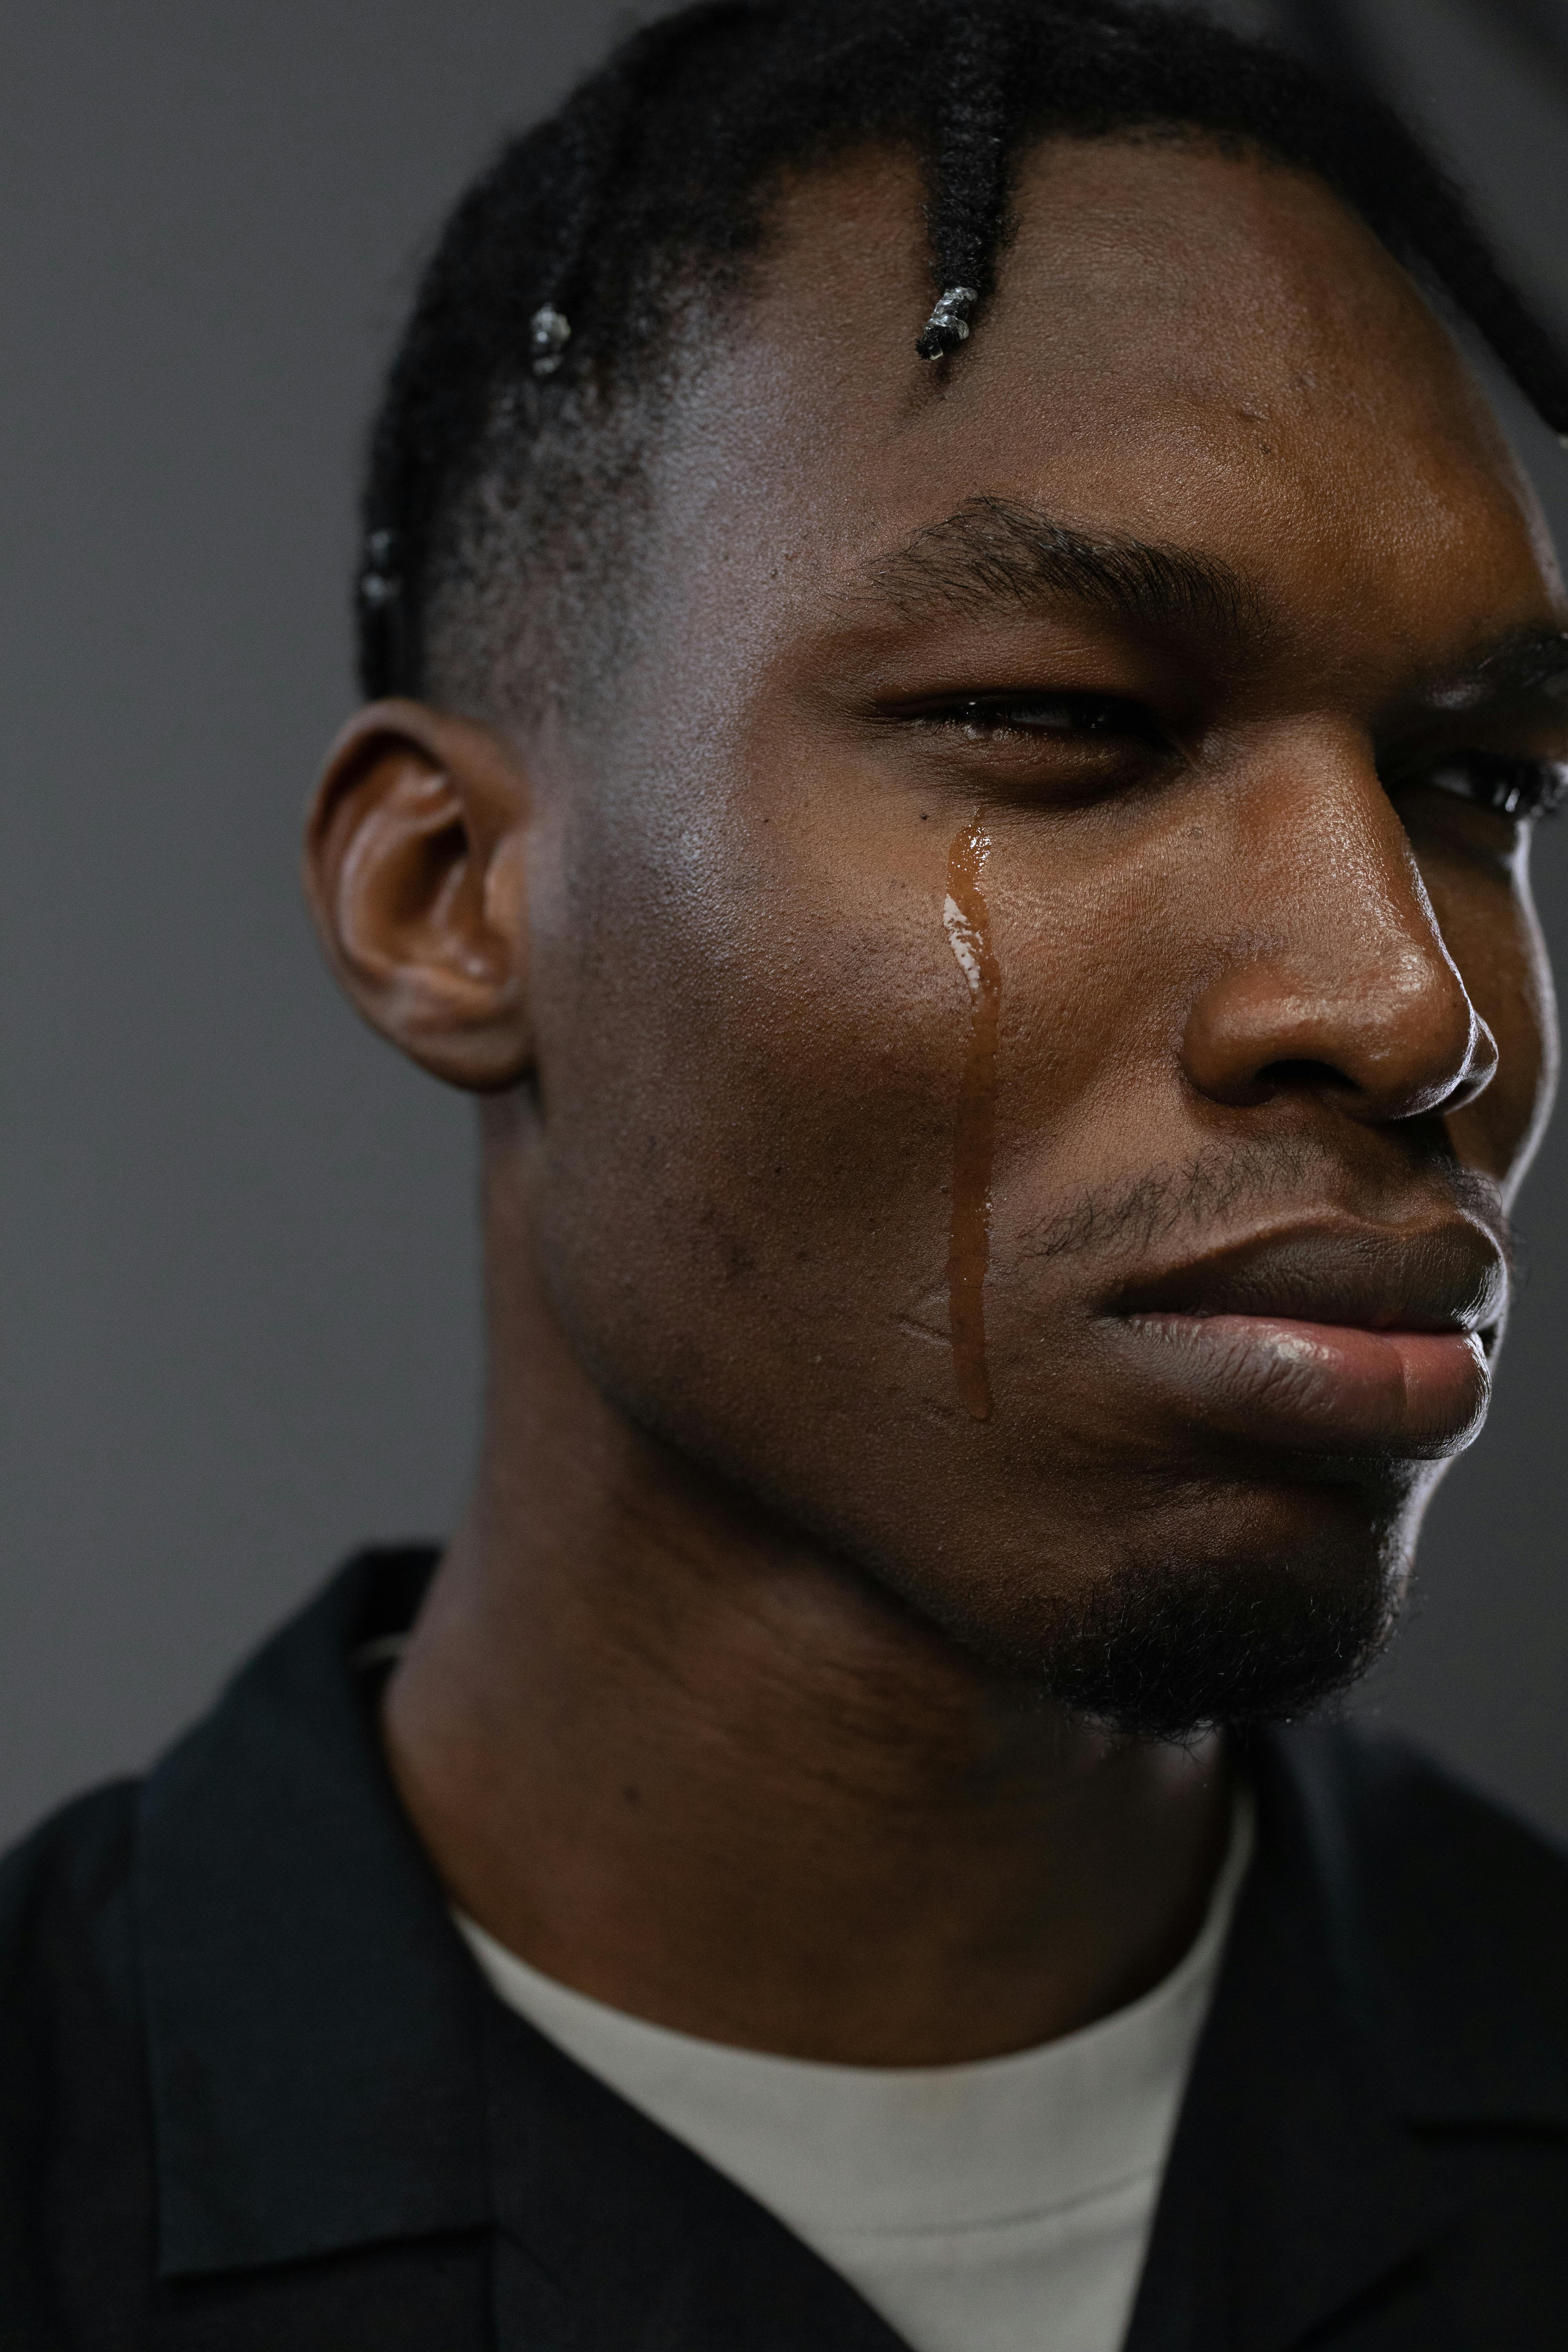 Un homme qui pleure | Source : Pexels